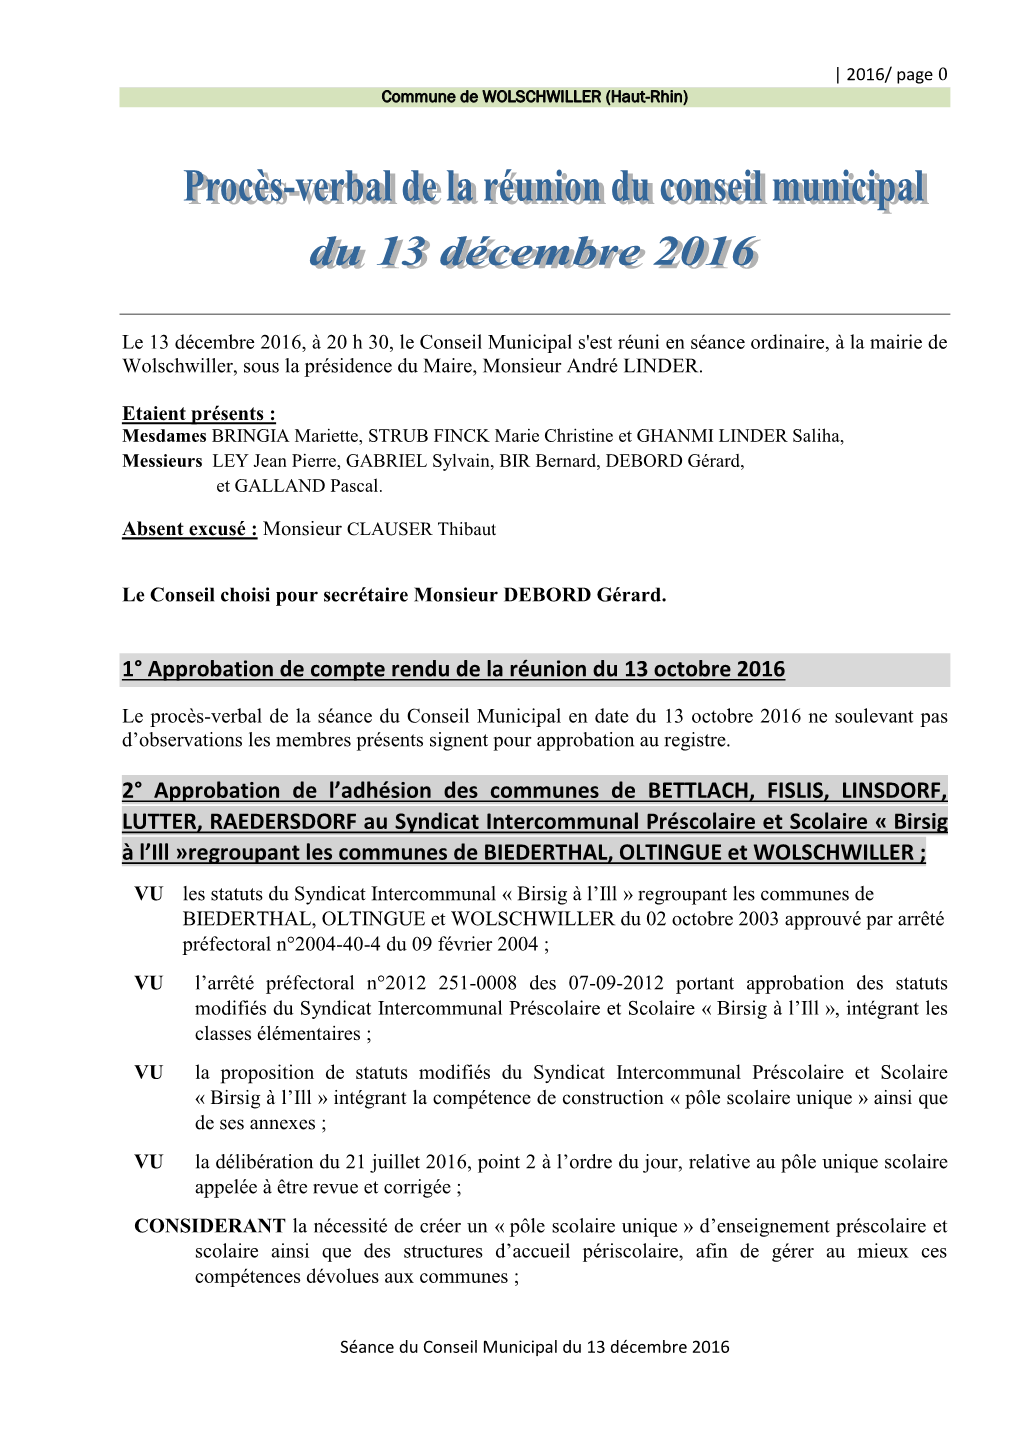 1° Approbation De Compte Rendu De La Réunion Du 13 Octobre 2016